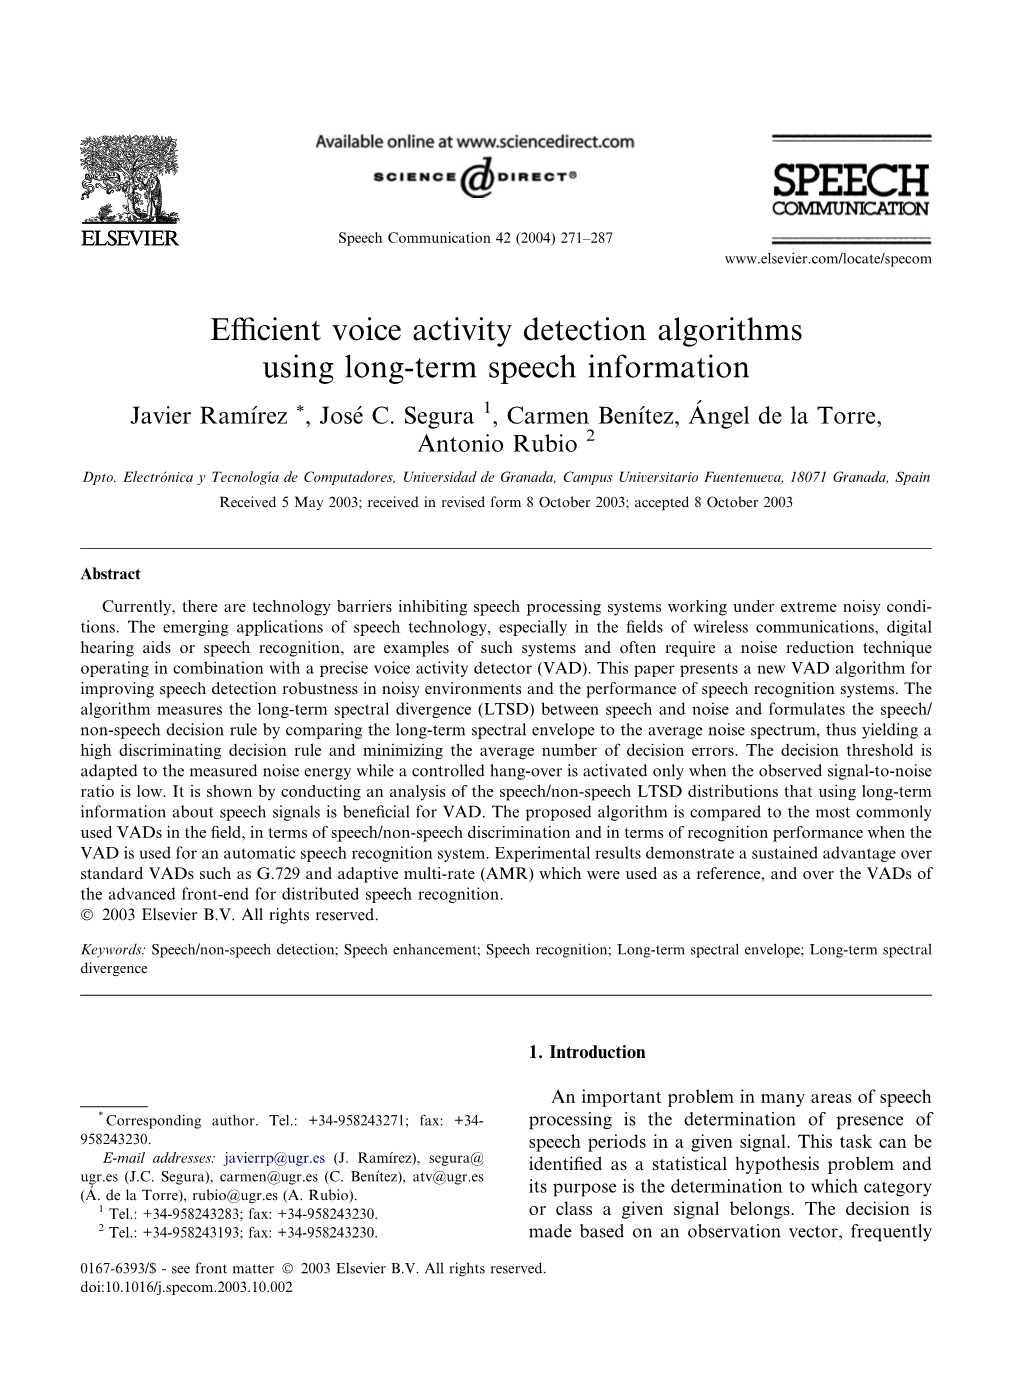 Efficient Voice Activity Detection Algorithms Using Long-Term Speech